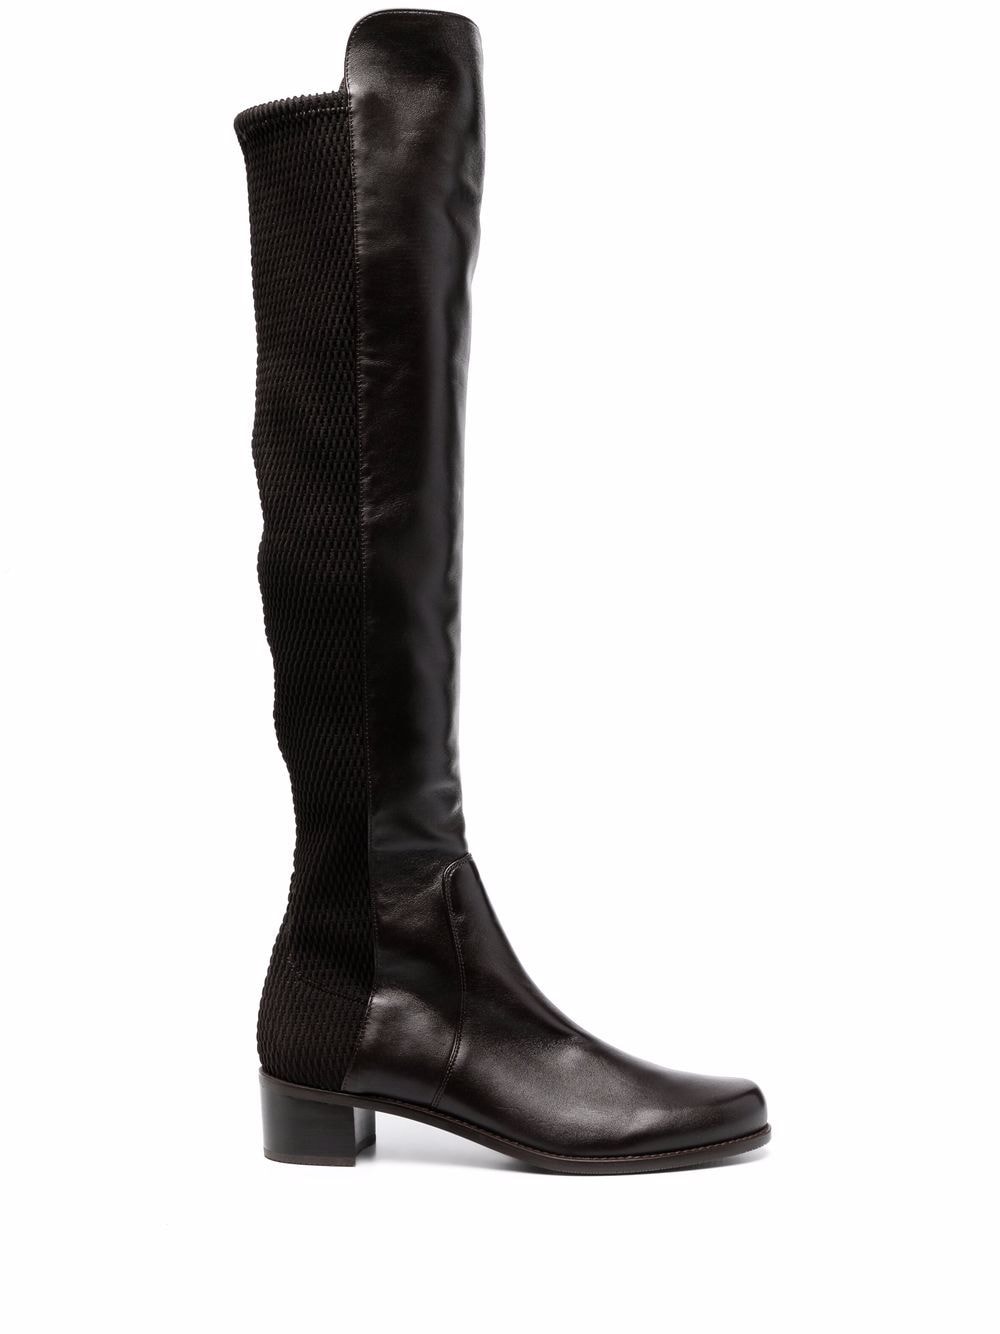 Stuart Weitzman thigh-high leather boots - Brown von Stuart Weitzman